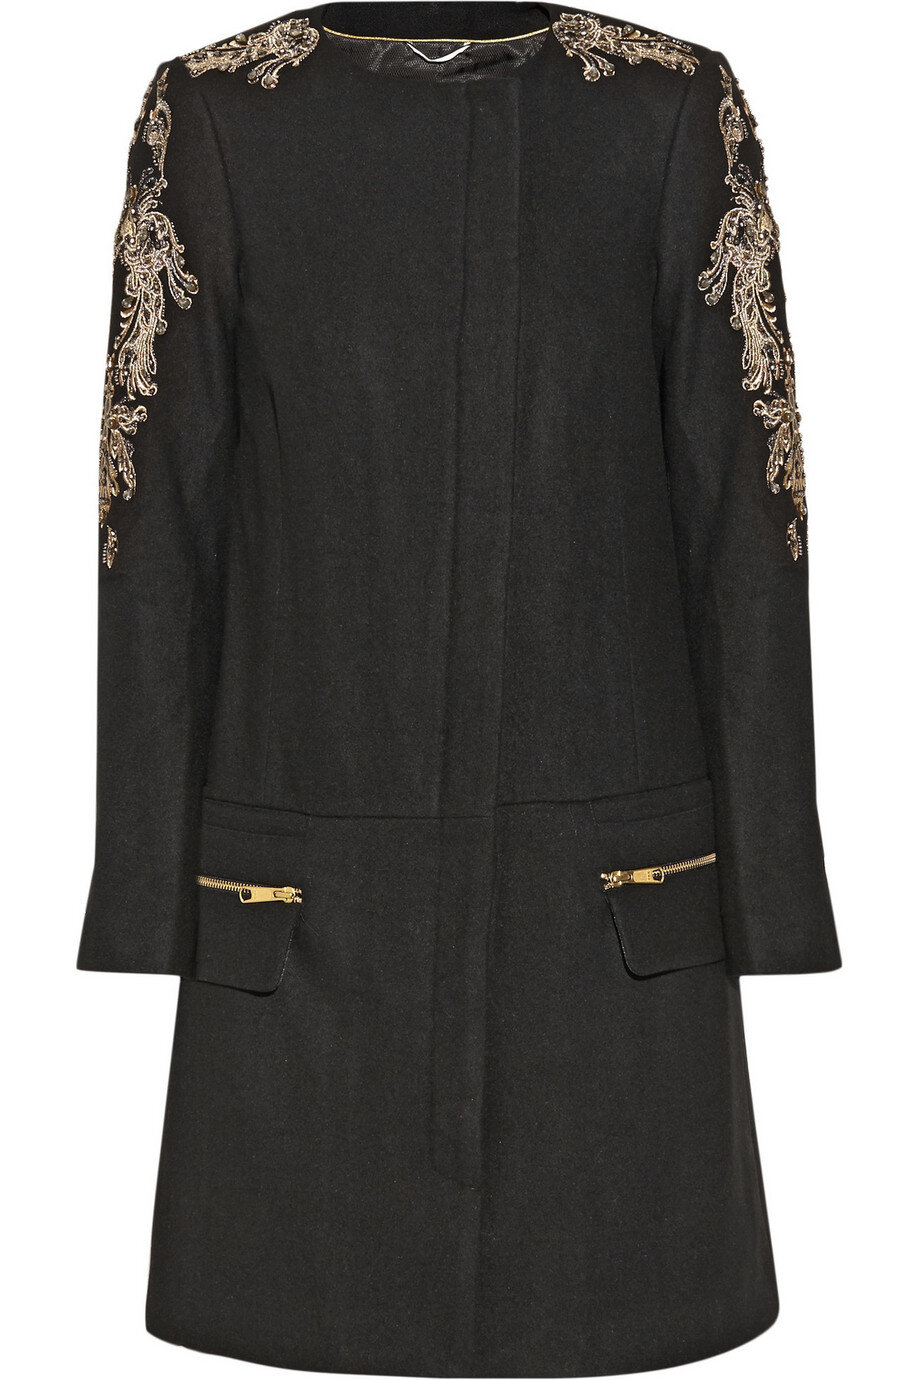 DAY Birger et Mikkelsen Night Vibrant Embellished Coat in Black.jpg